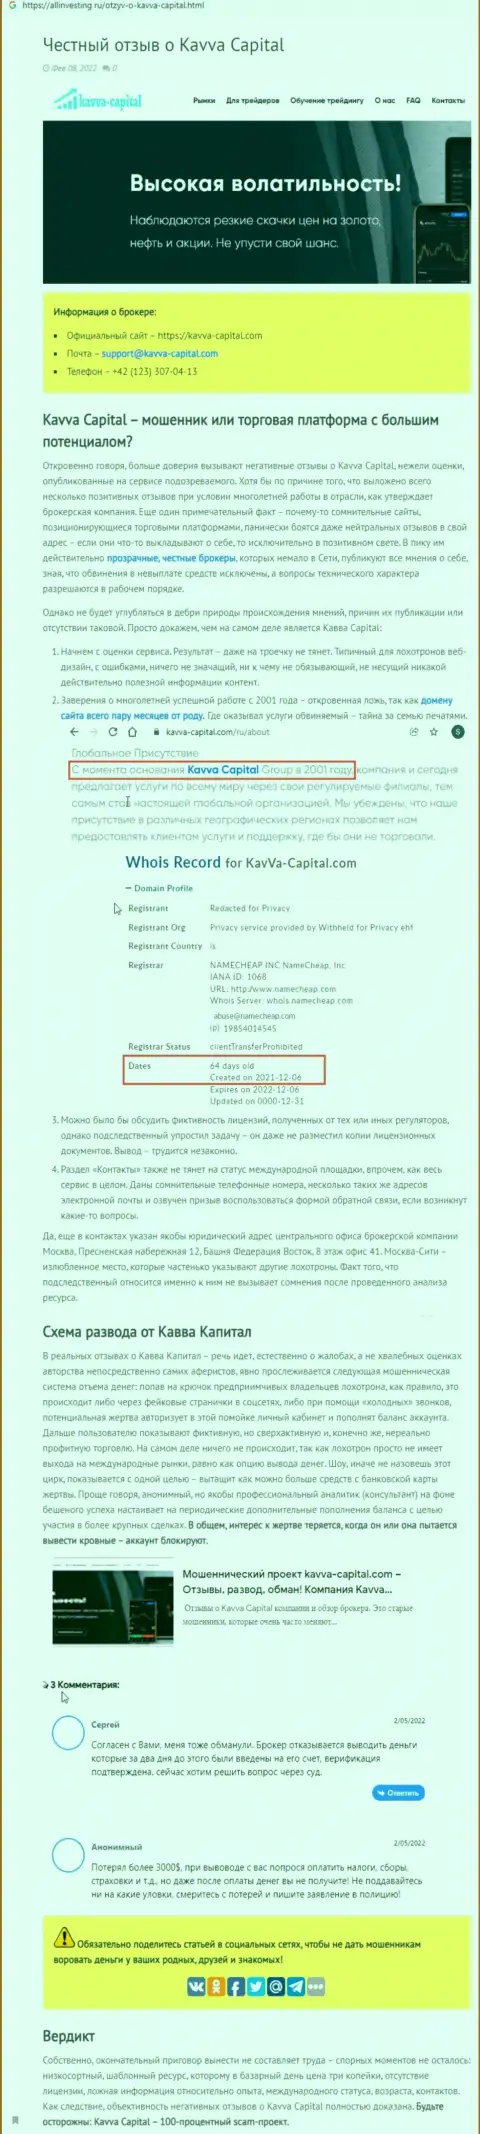 Kavva-Capital Com: обзор мошеннической организации и реальные отзывы, утративших вложенные деньги лохов